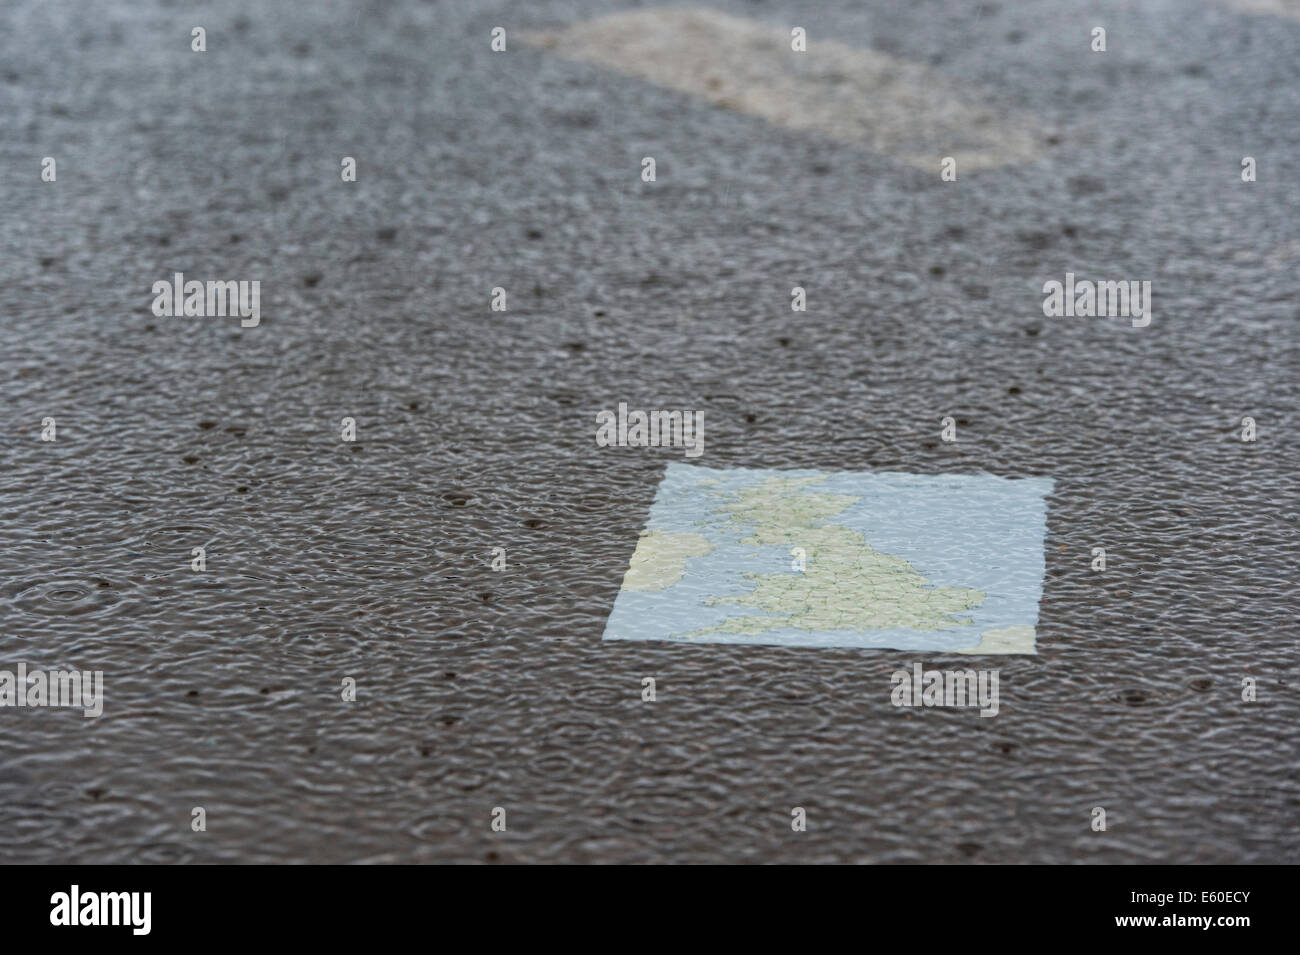 La carte du Royaume-Uni dans une flaque d'eau sur une route sous la pluie. Banque D'Images